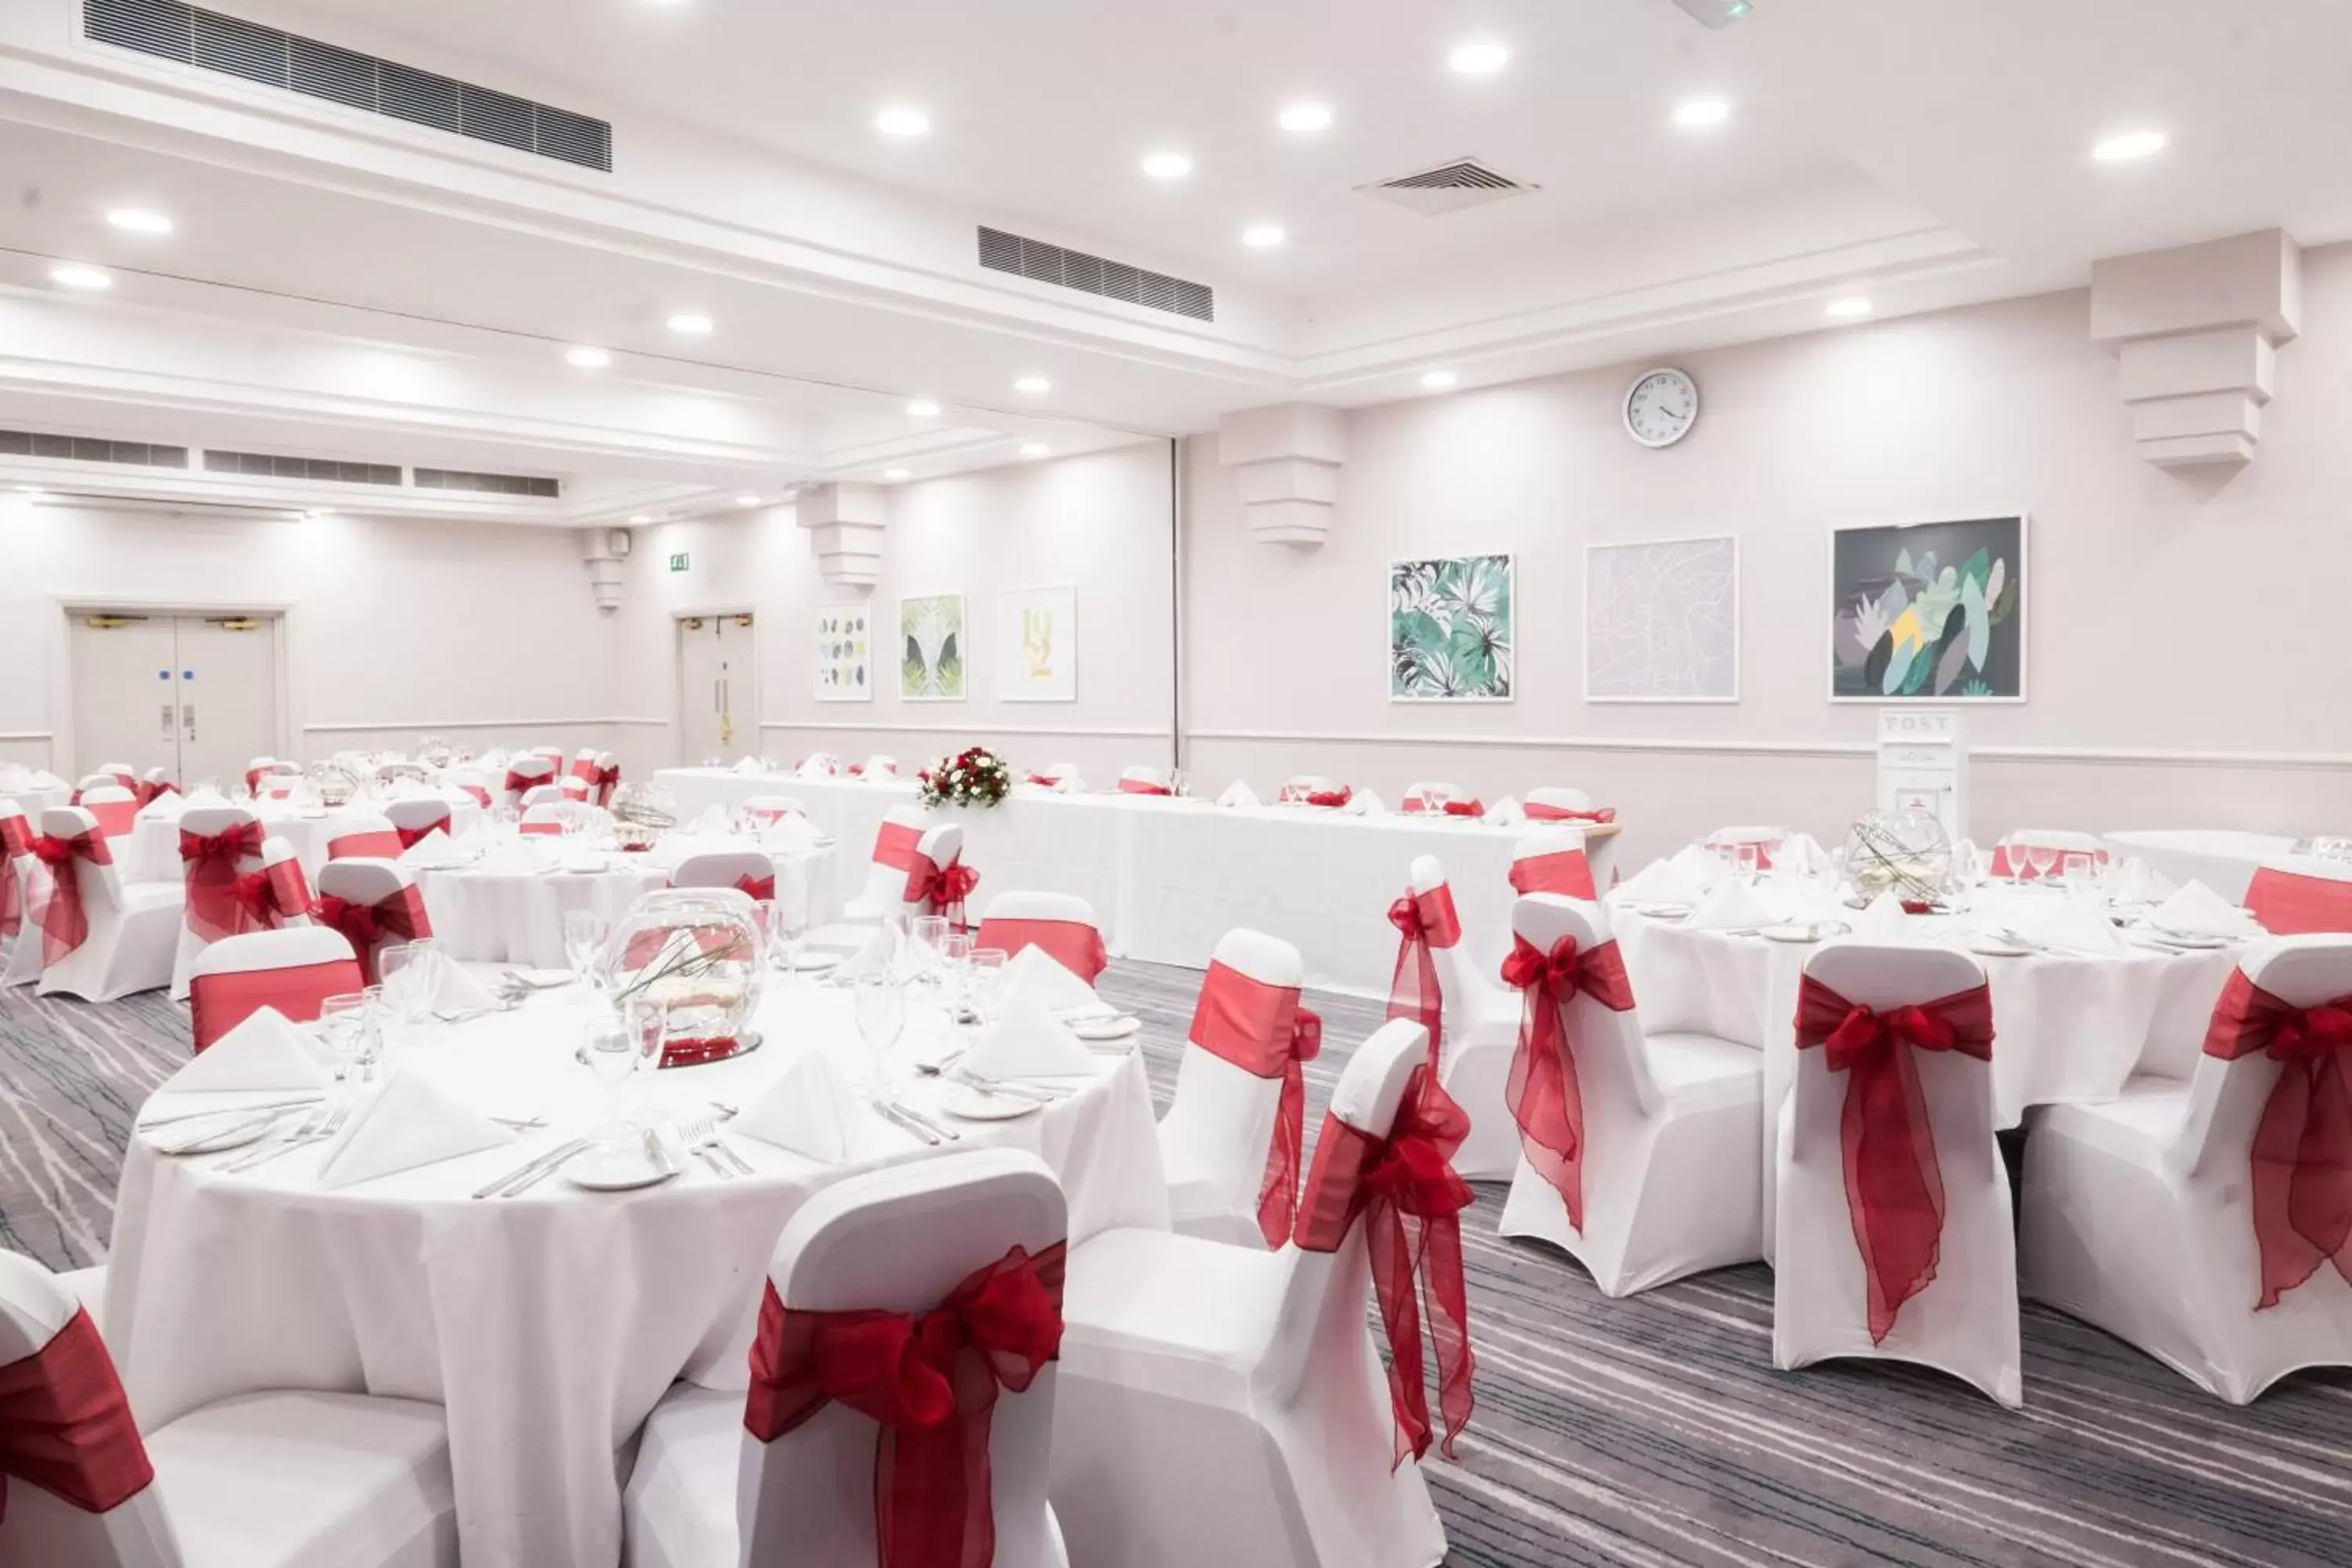 Banquet/Function facilities, Banquet Facilities in Holiday Inn Farnborough, an IHG Hotel